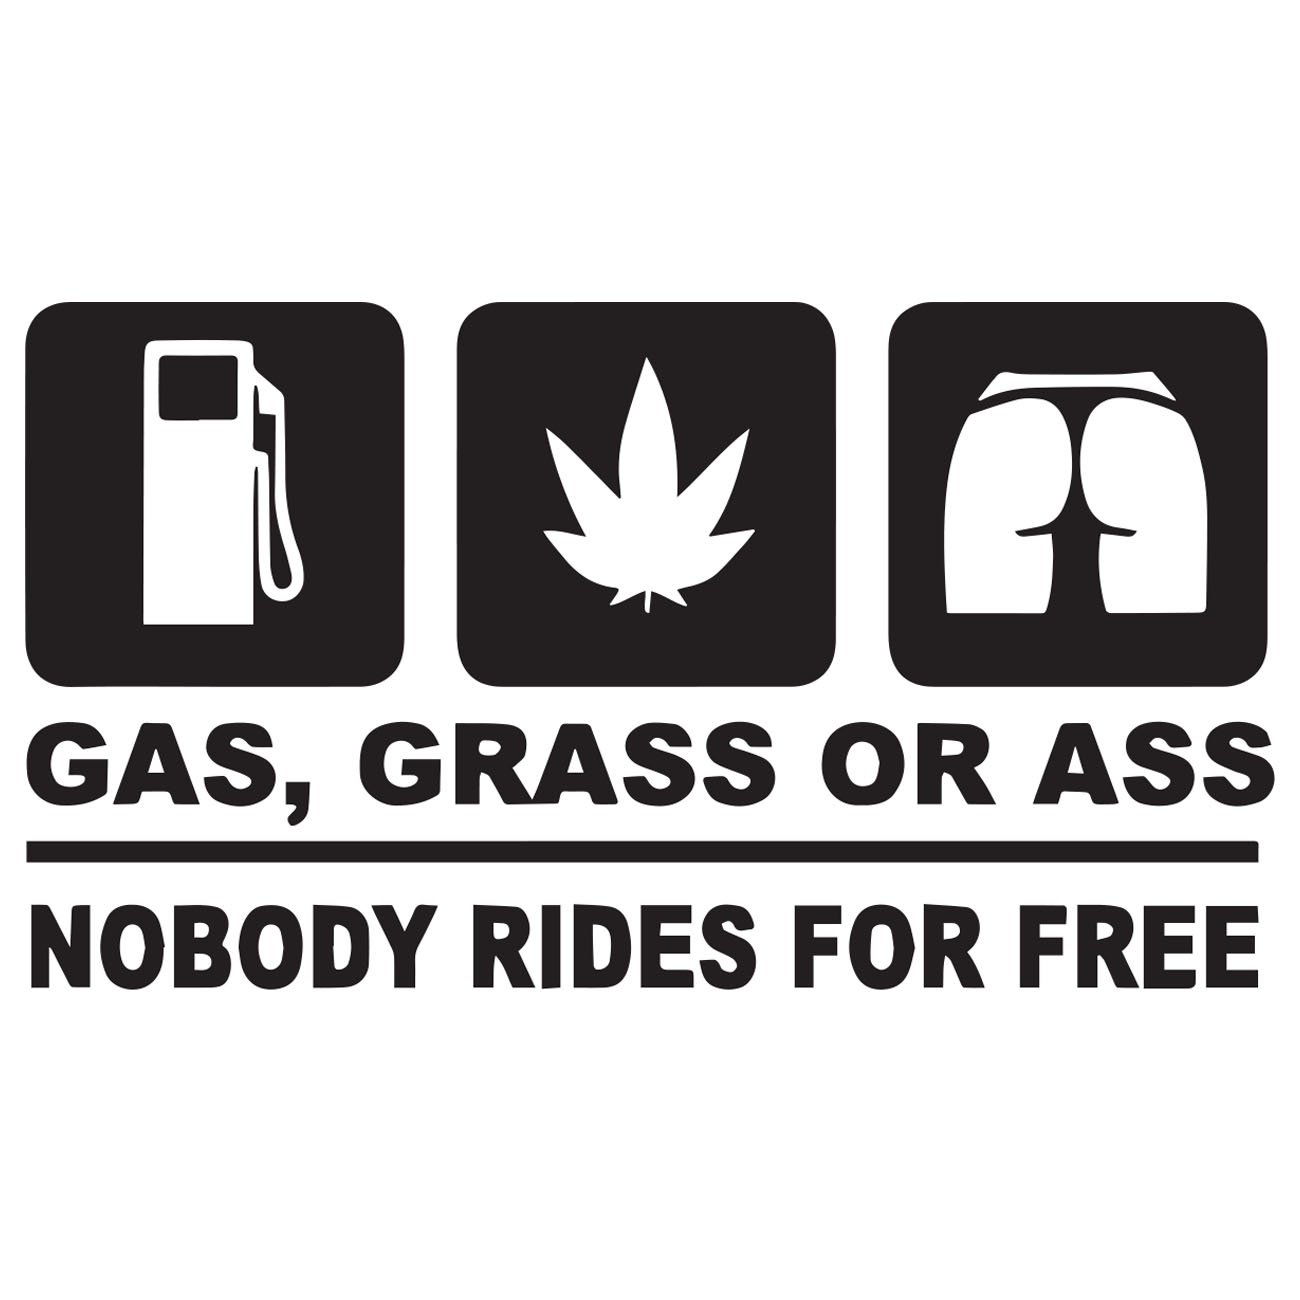 Gas grass or ass